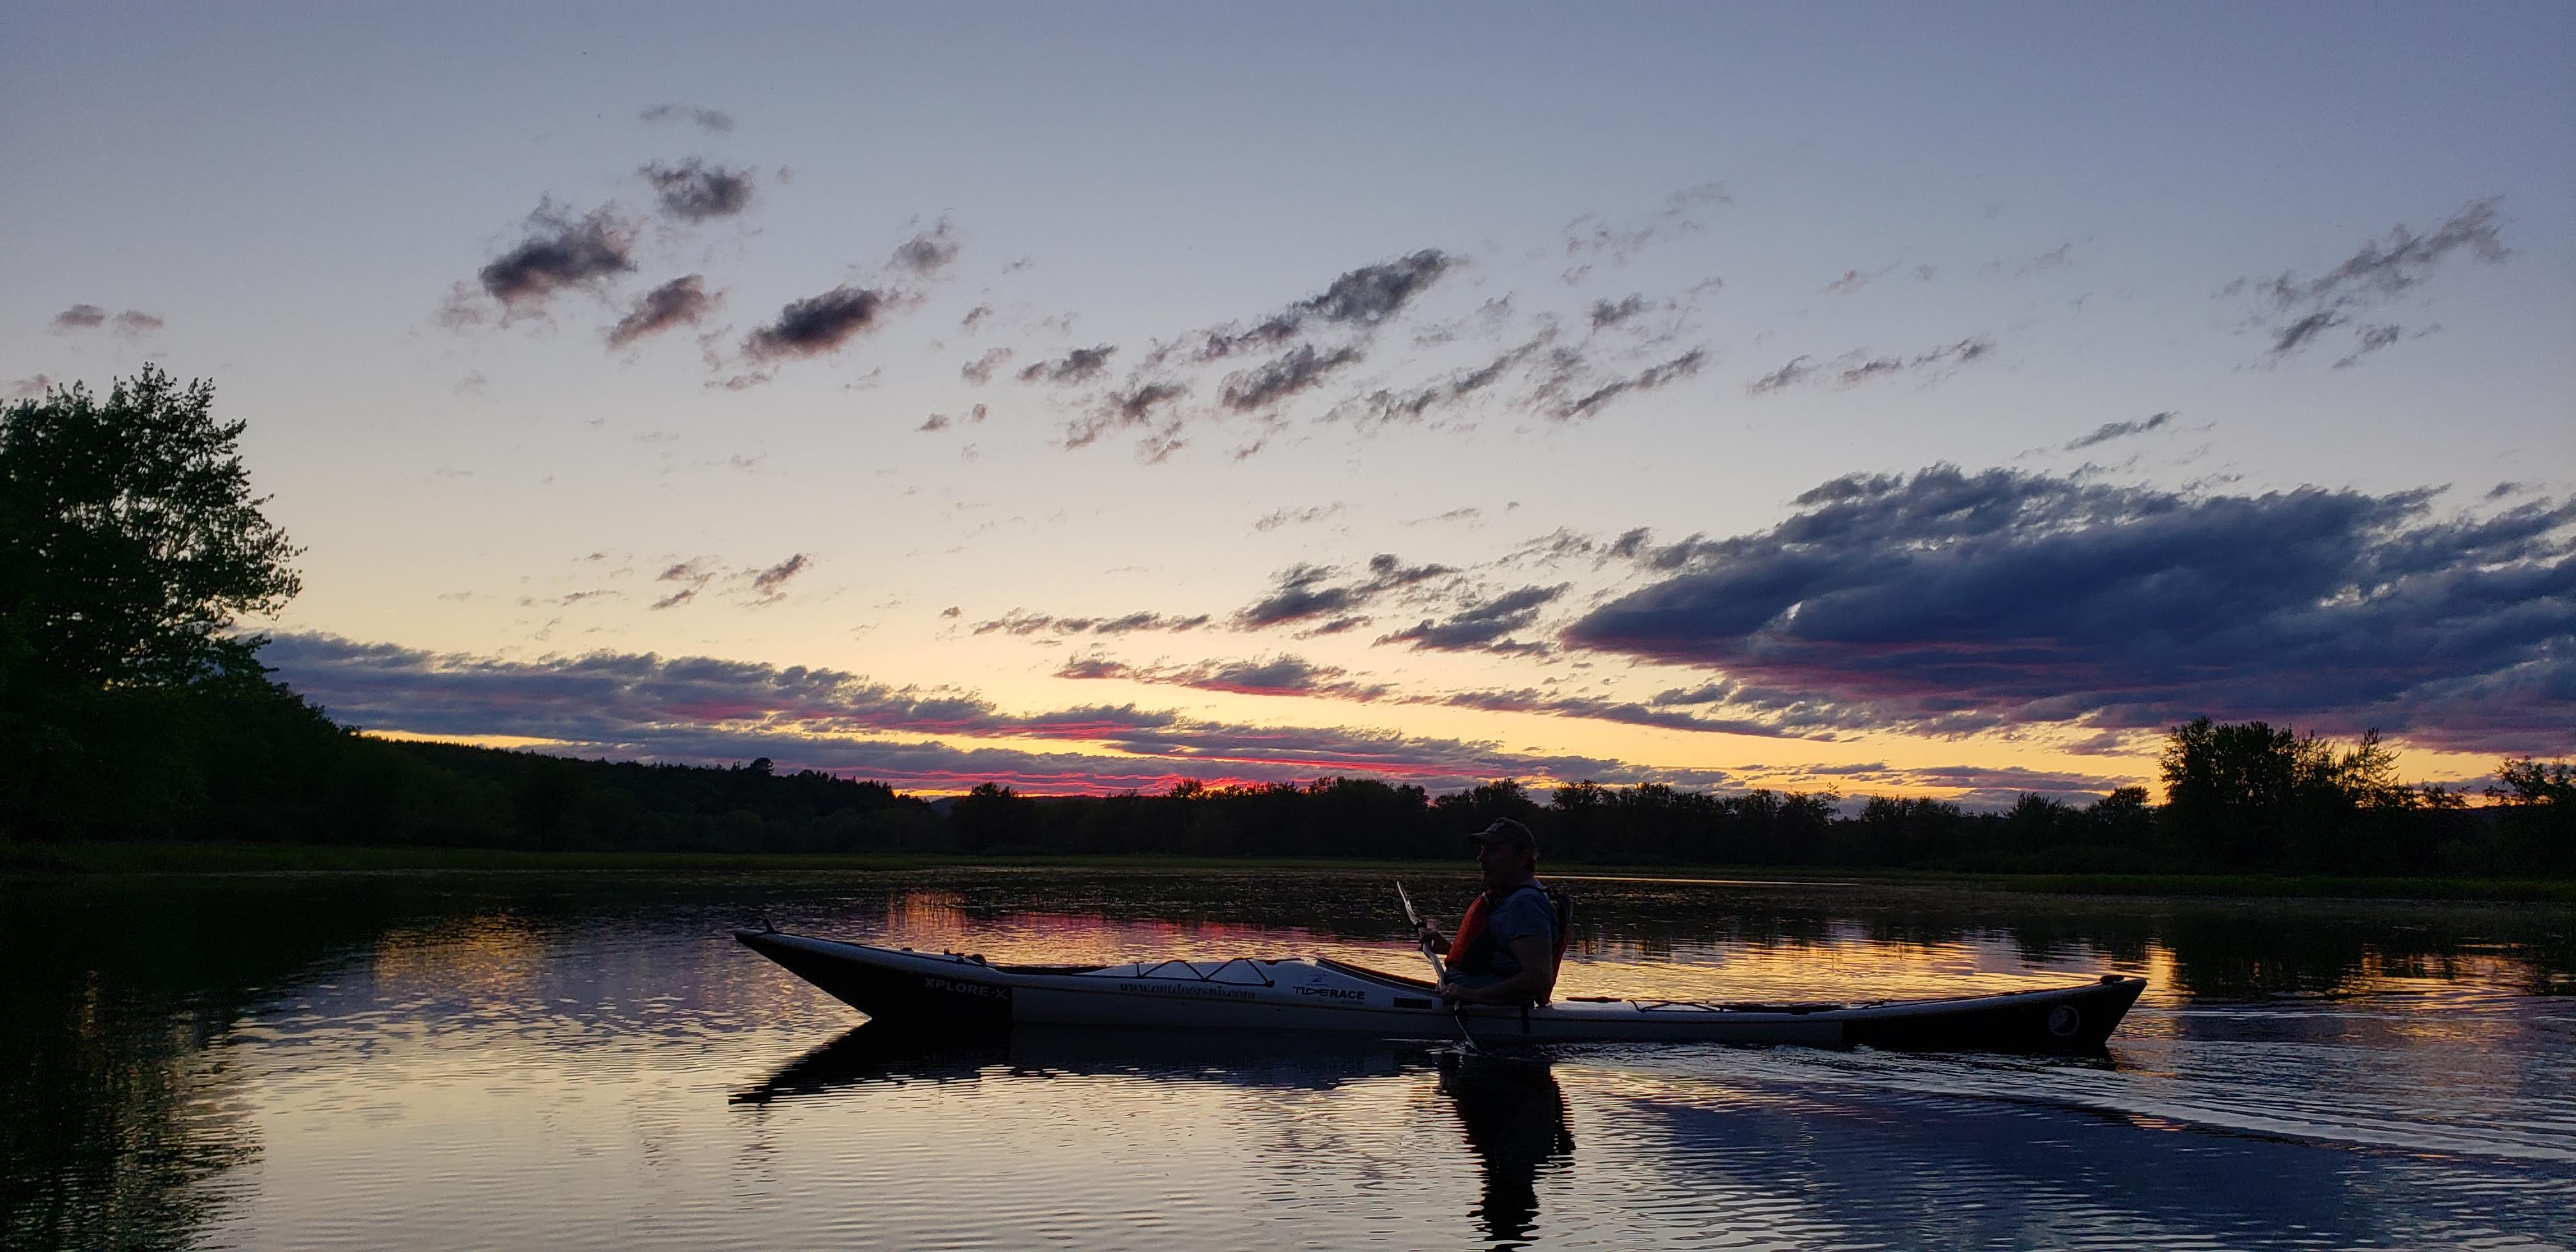 OutdoorsNB Kayak, Canoe and SUP Rental / #CanadaDo / Tourism New Brunswick